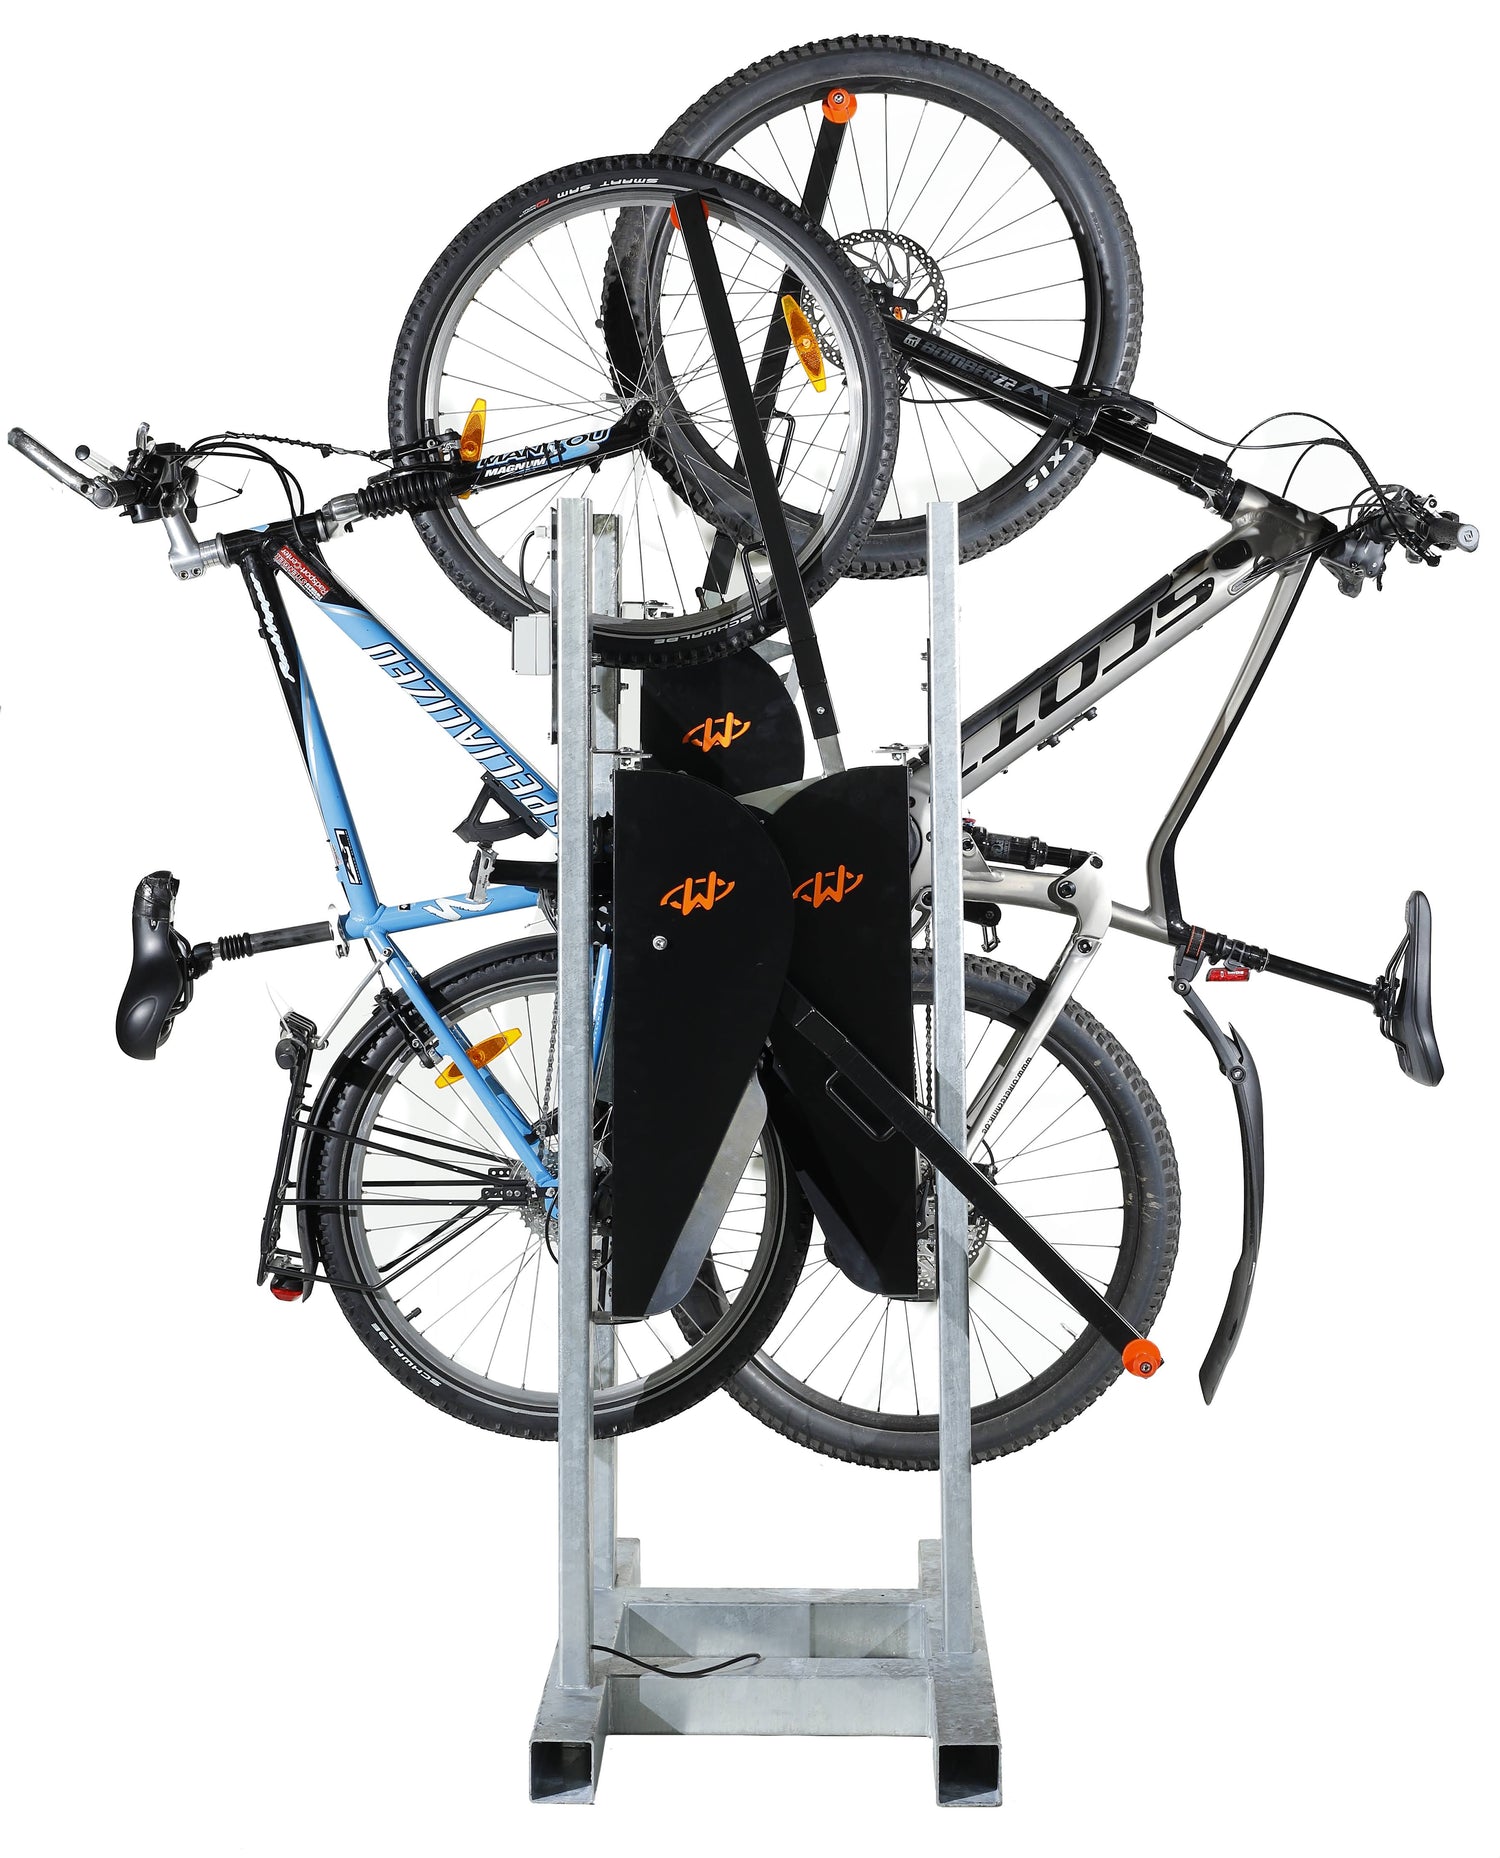 OnStreet - Vertical Bike Rack System